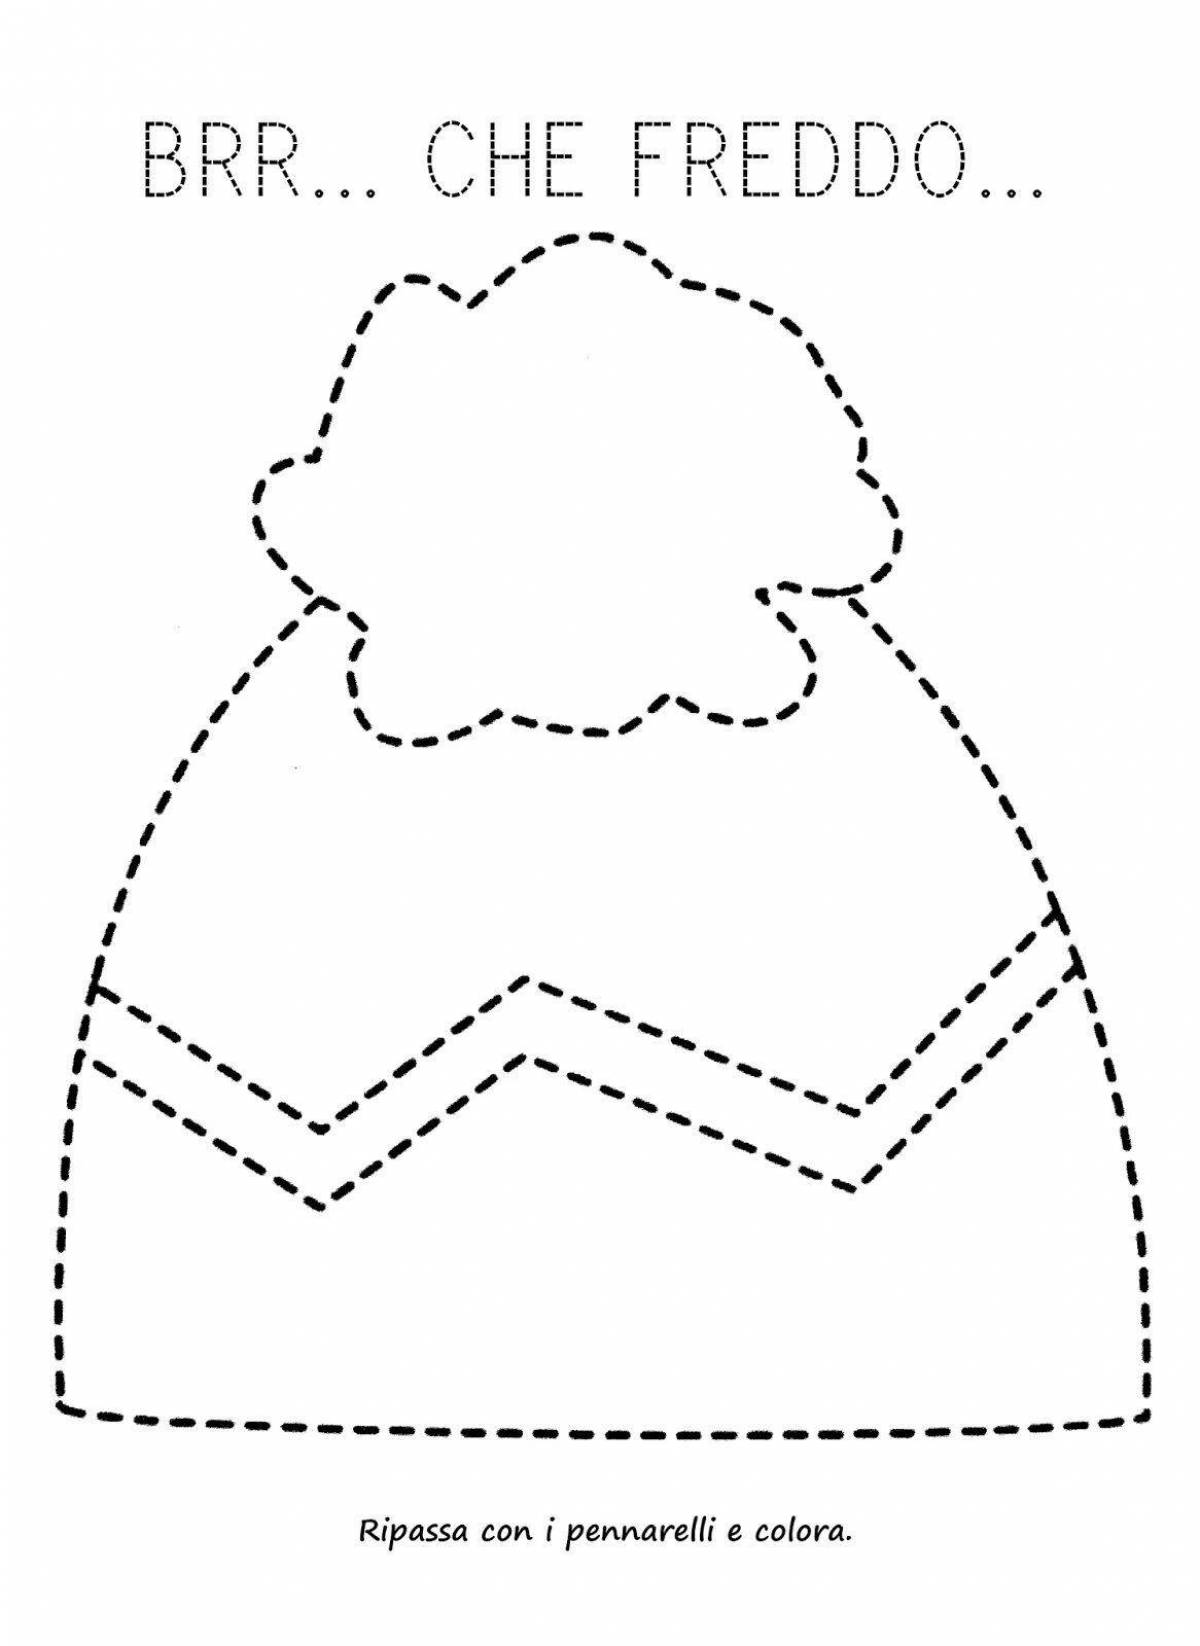 Раскраска гламурная кепка для детей 2-3 лет